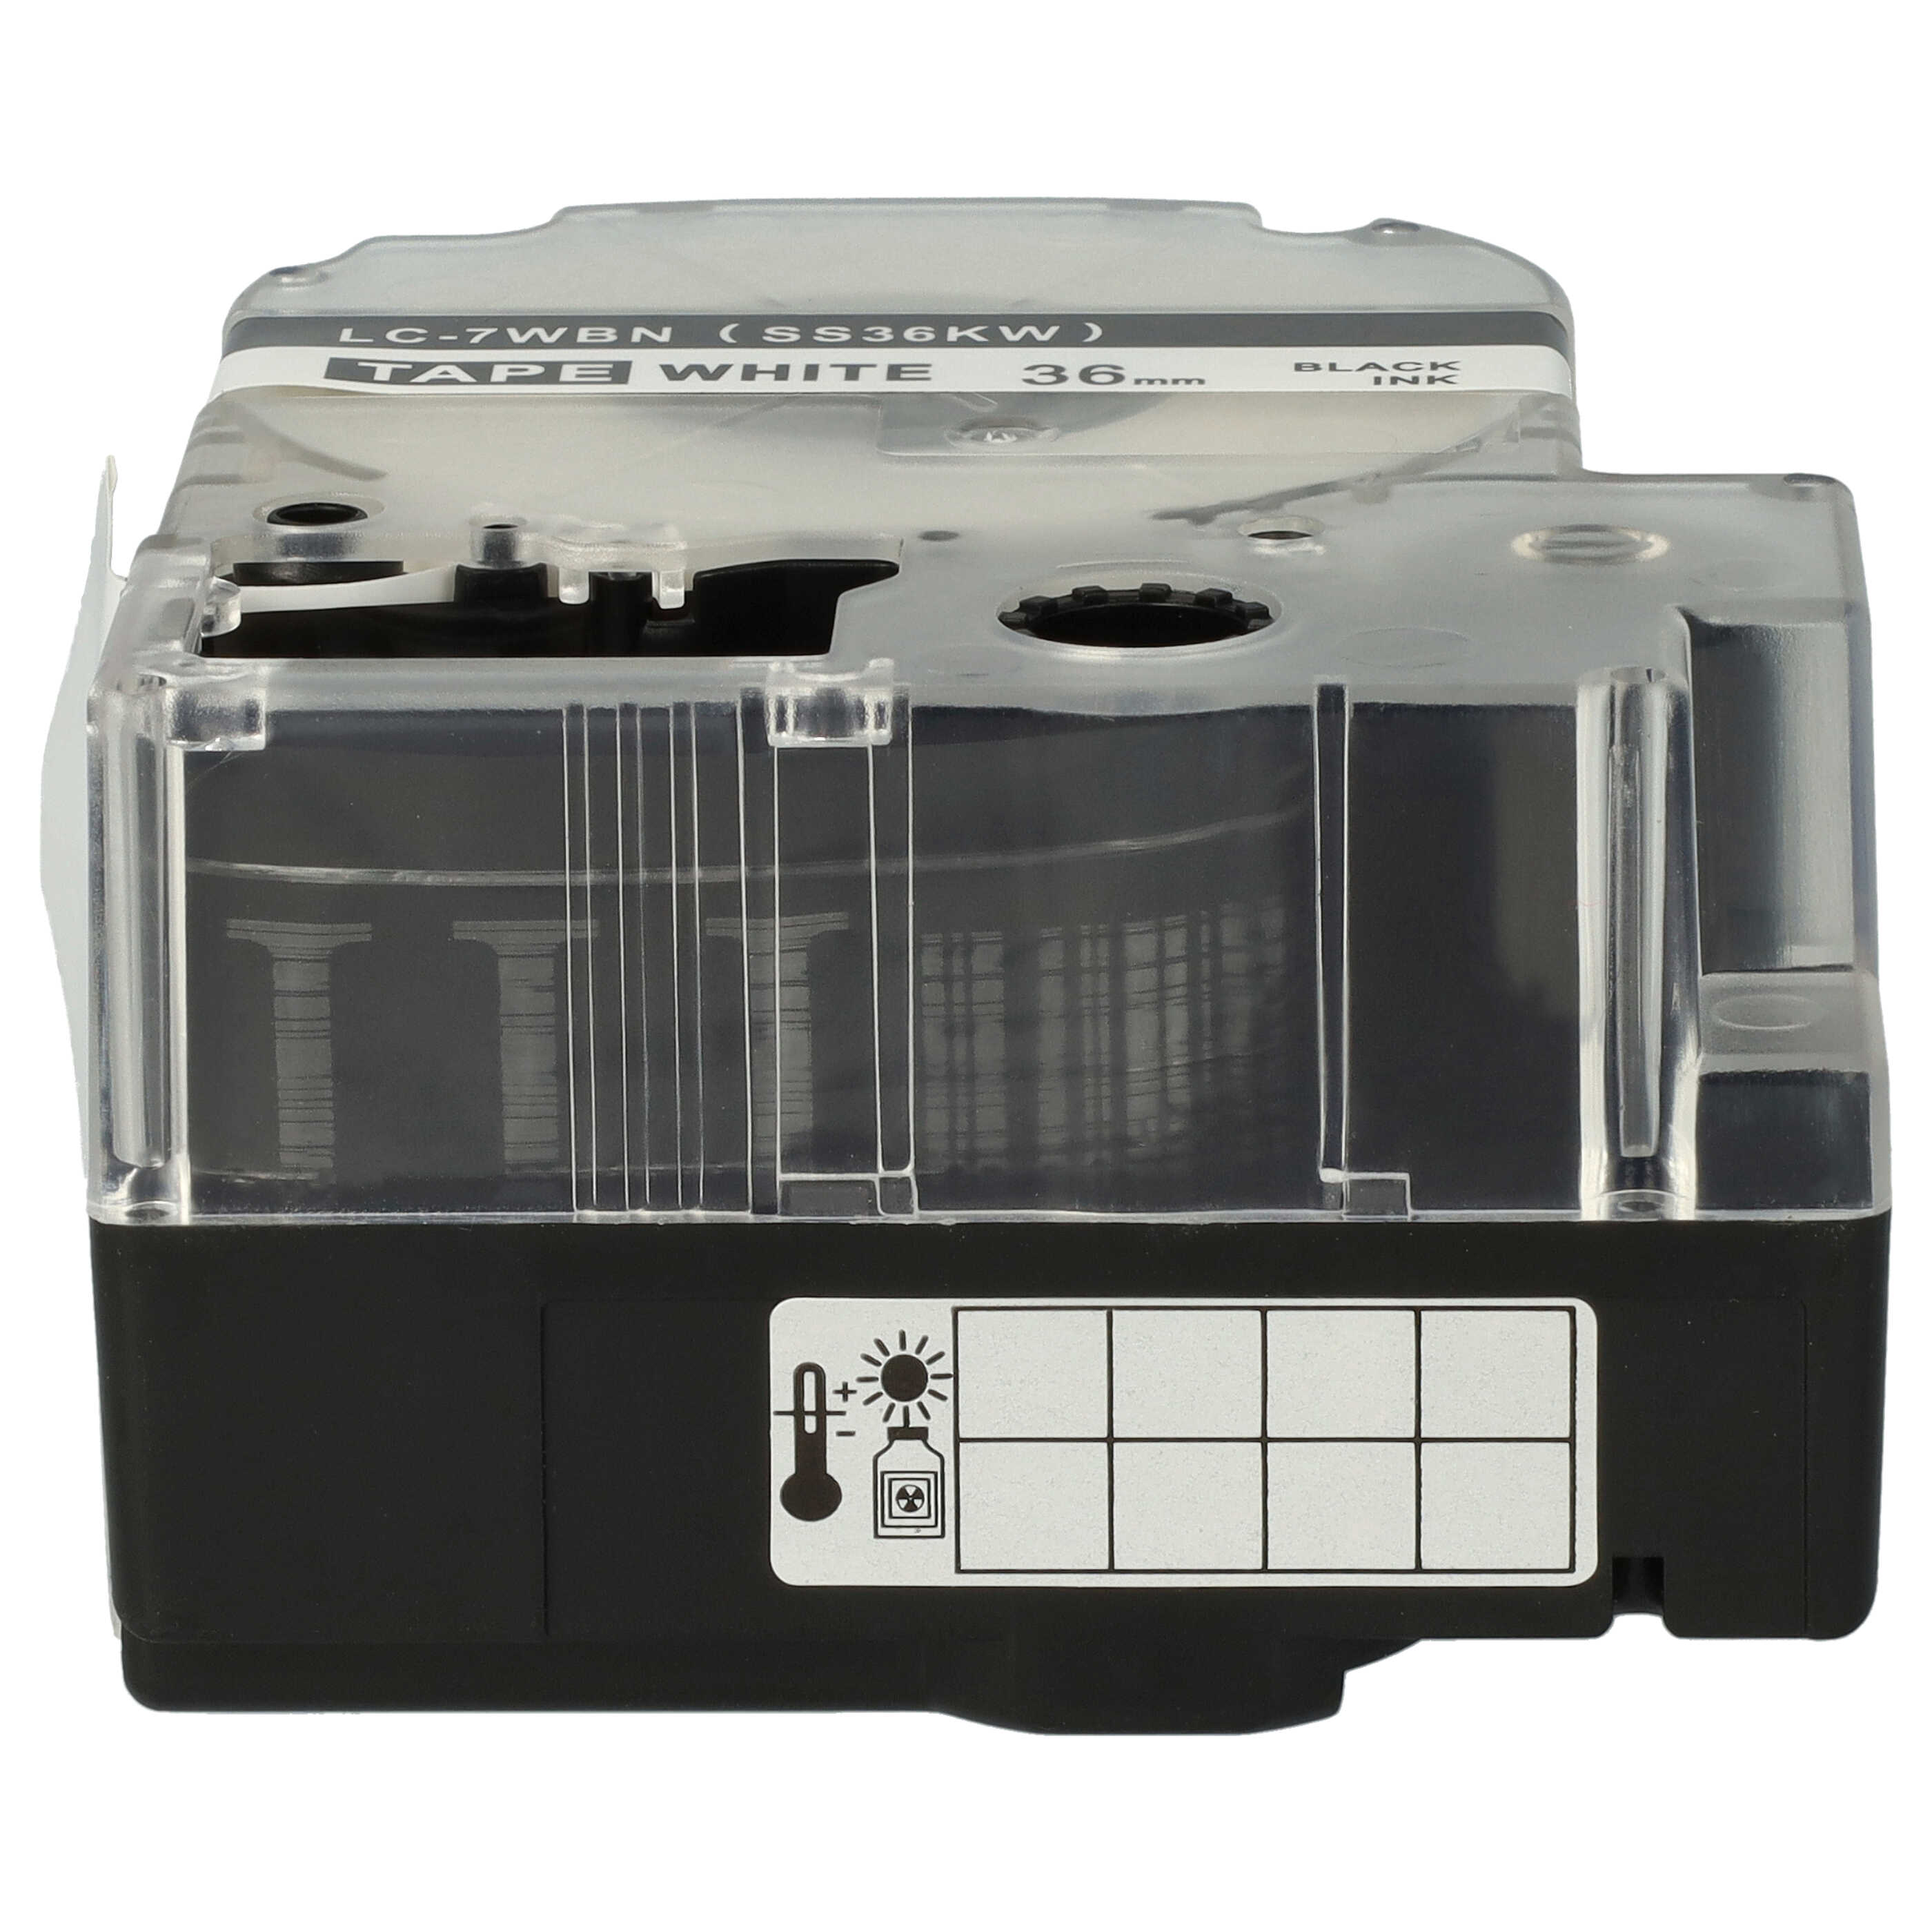 Cassetta nastro sostituisce Epson LC-7WBN per etichettatrice Epson 36mm nero su bianco